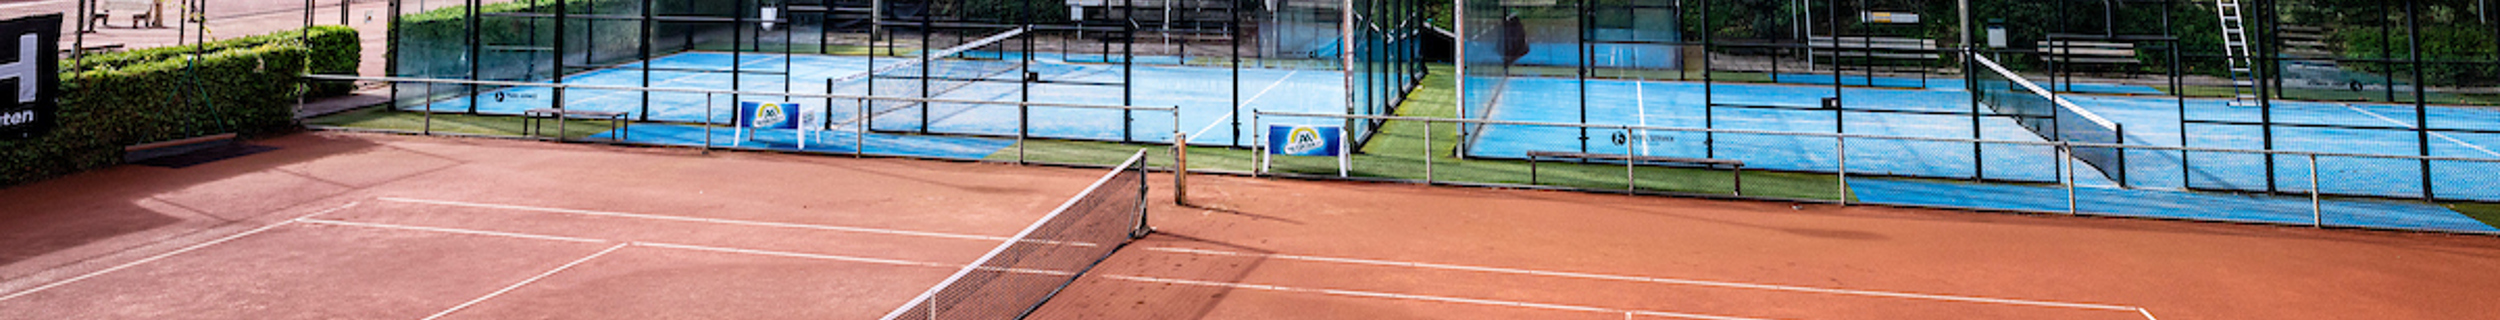 Houten Tennis Padel Ruimte